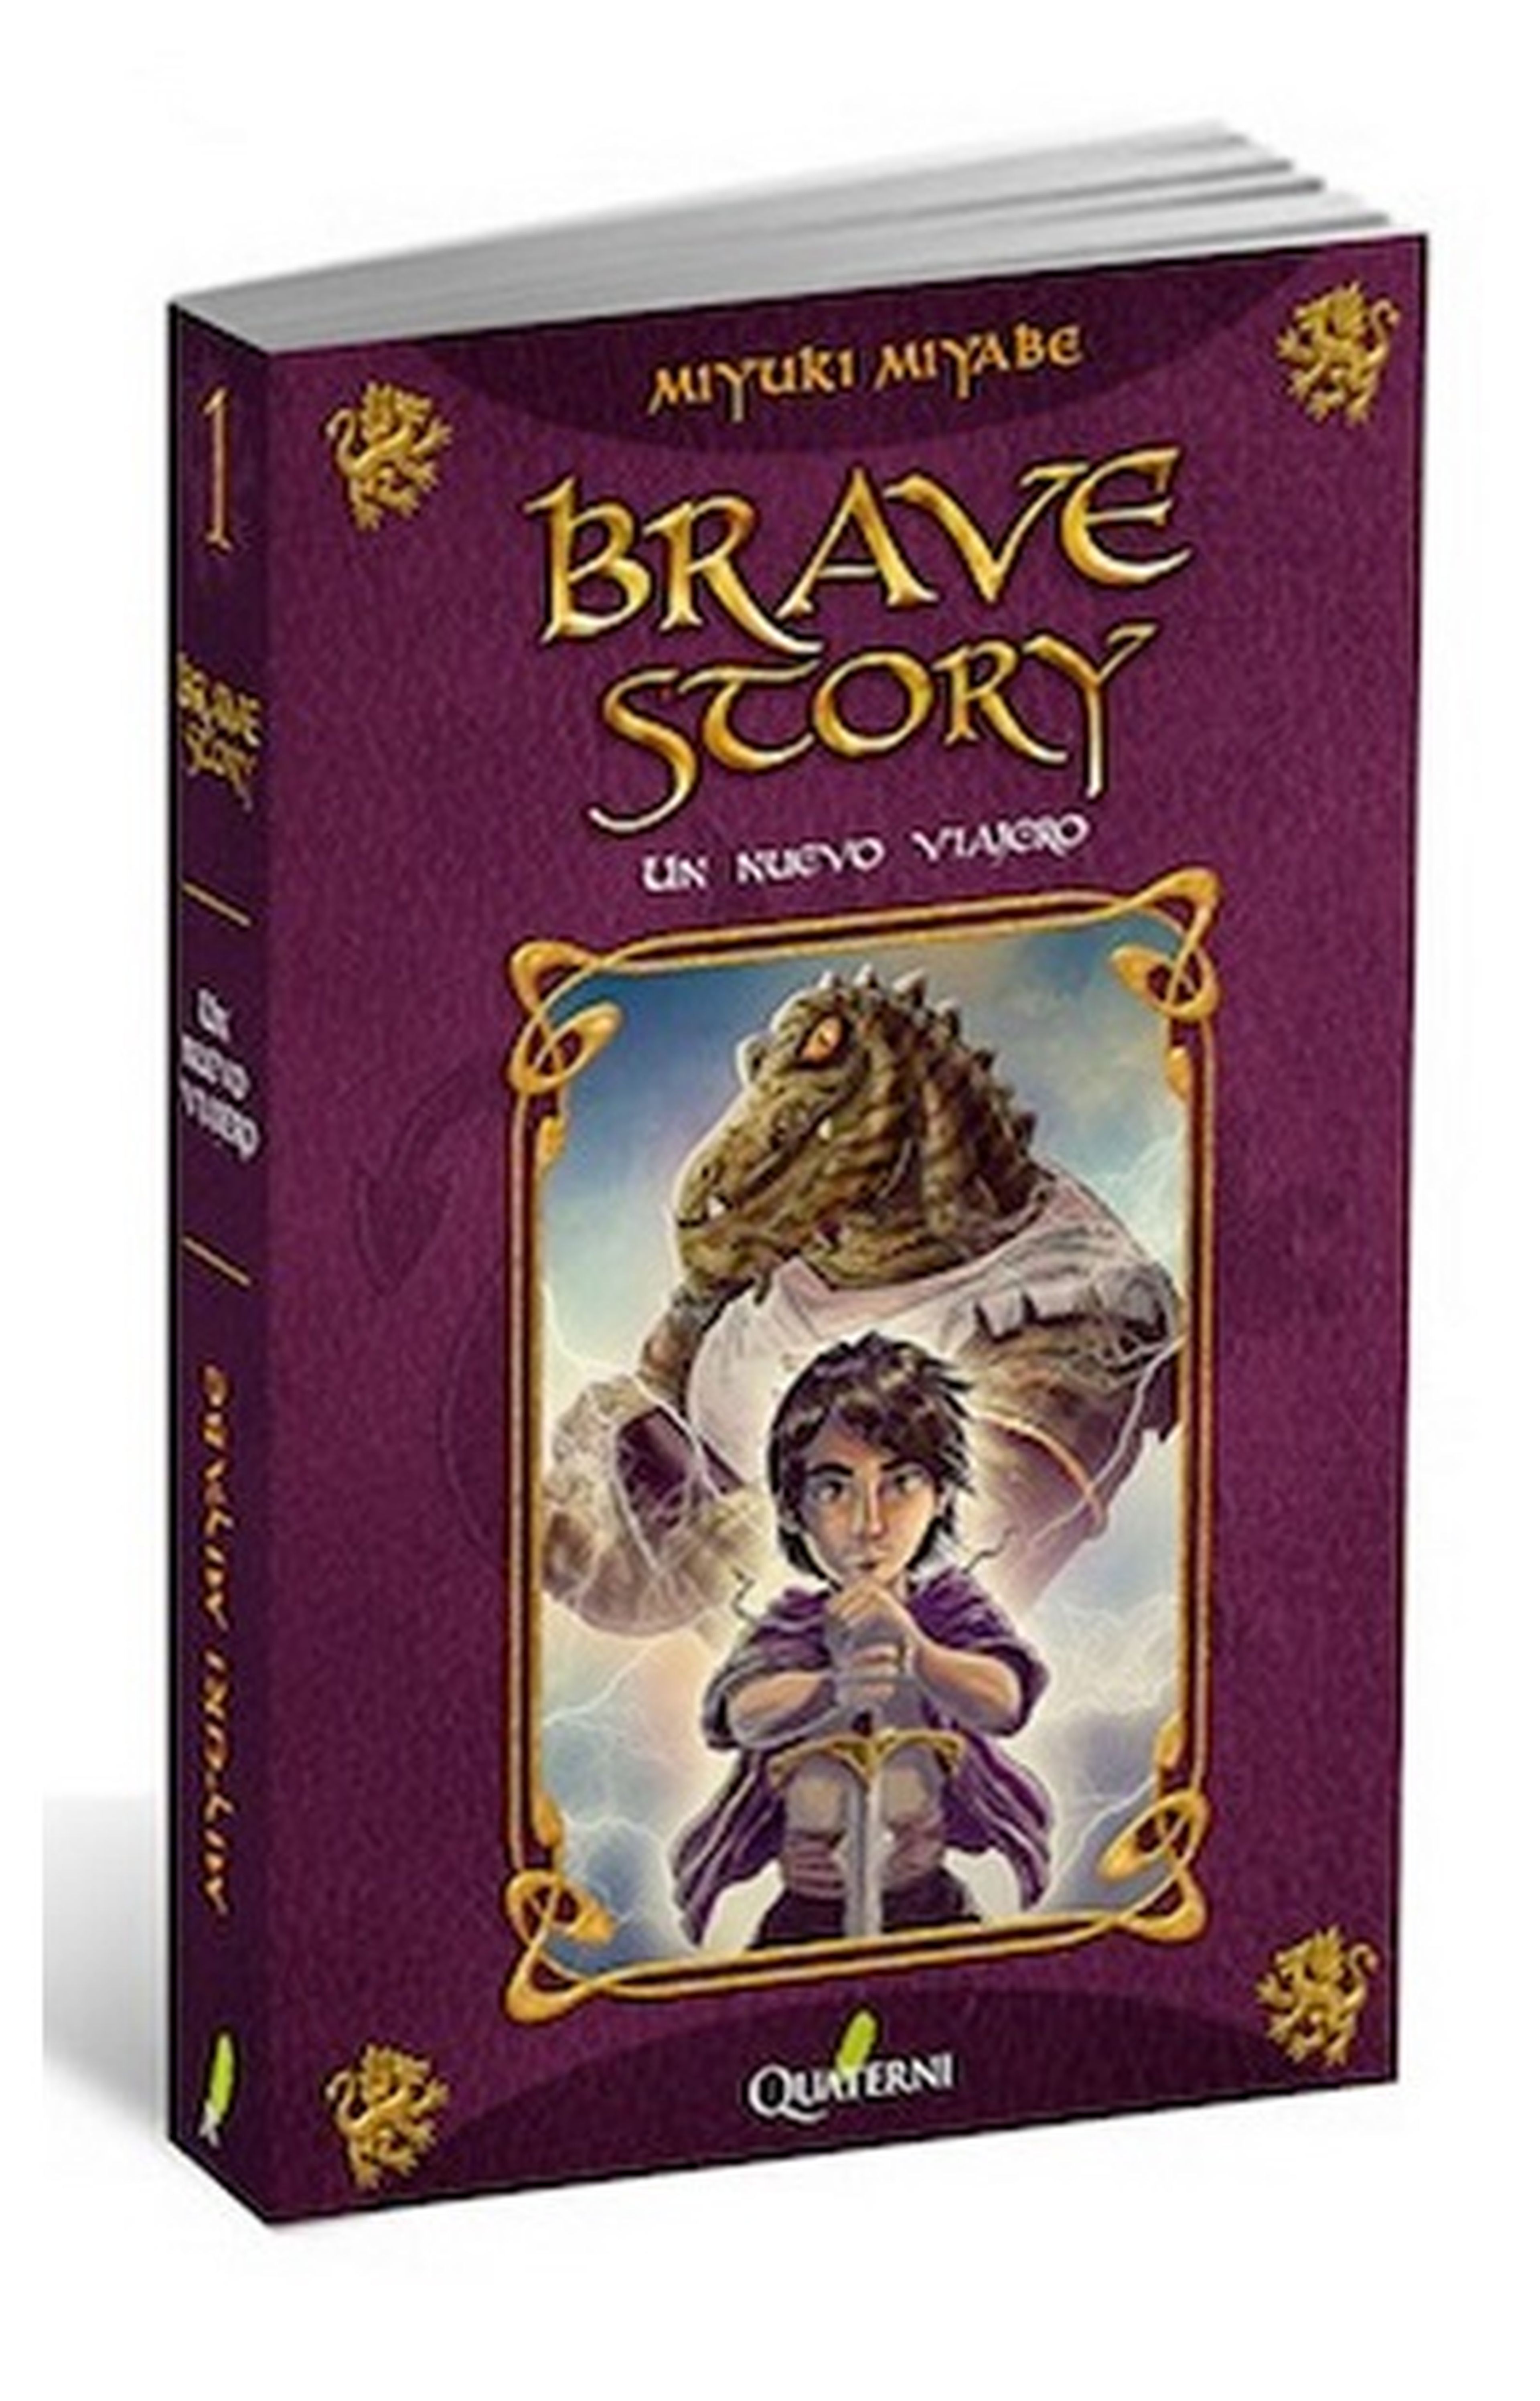 La novela Brave Story se publica a finales de mes